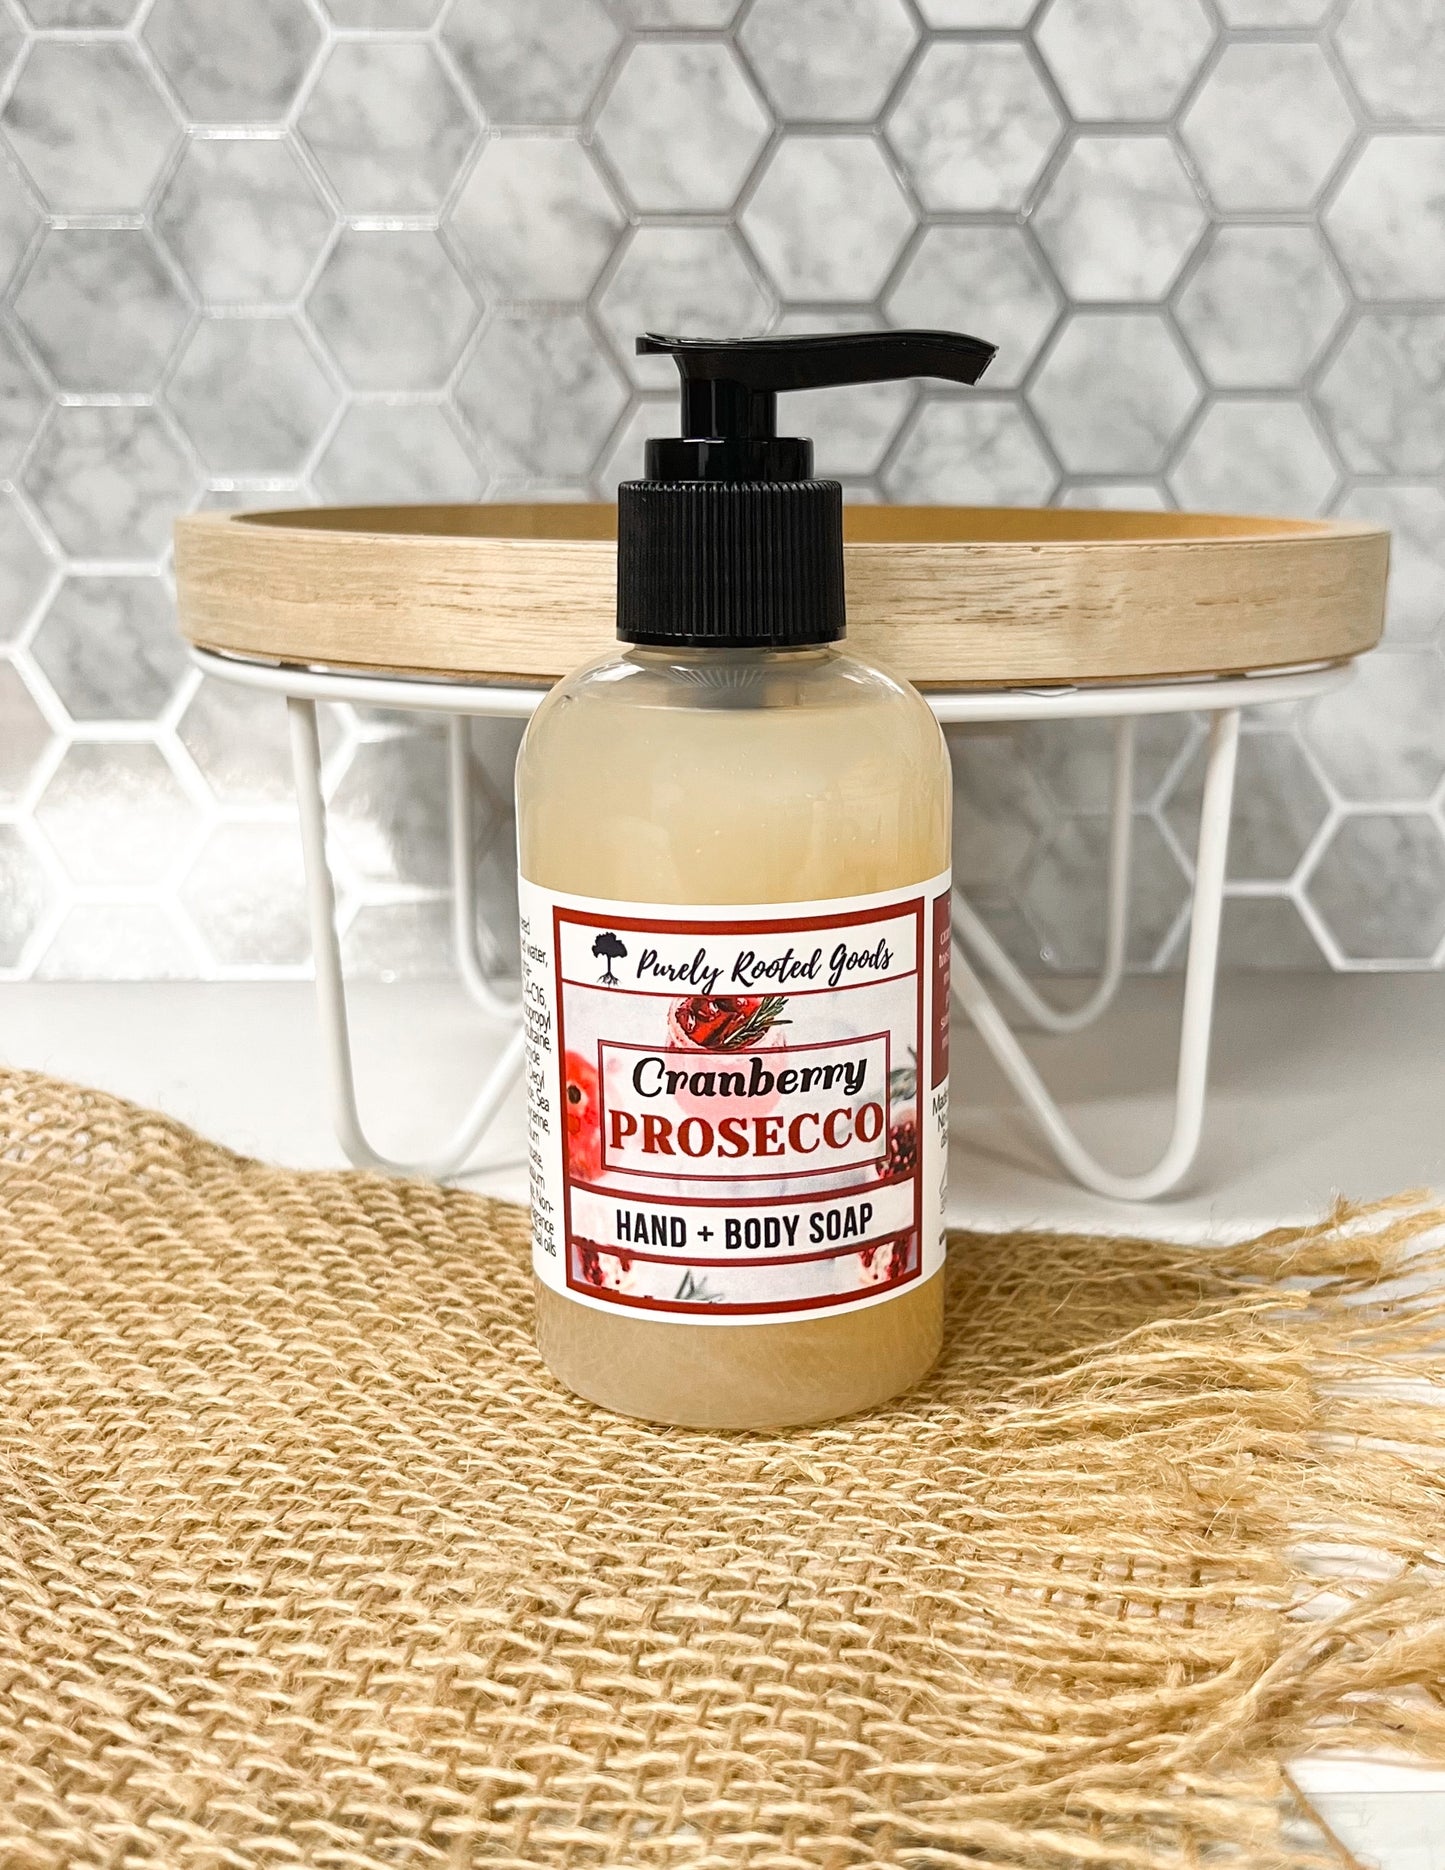 Italian Cranberry Prosecco Hand & Body Soap